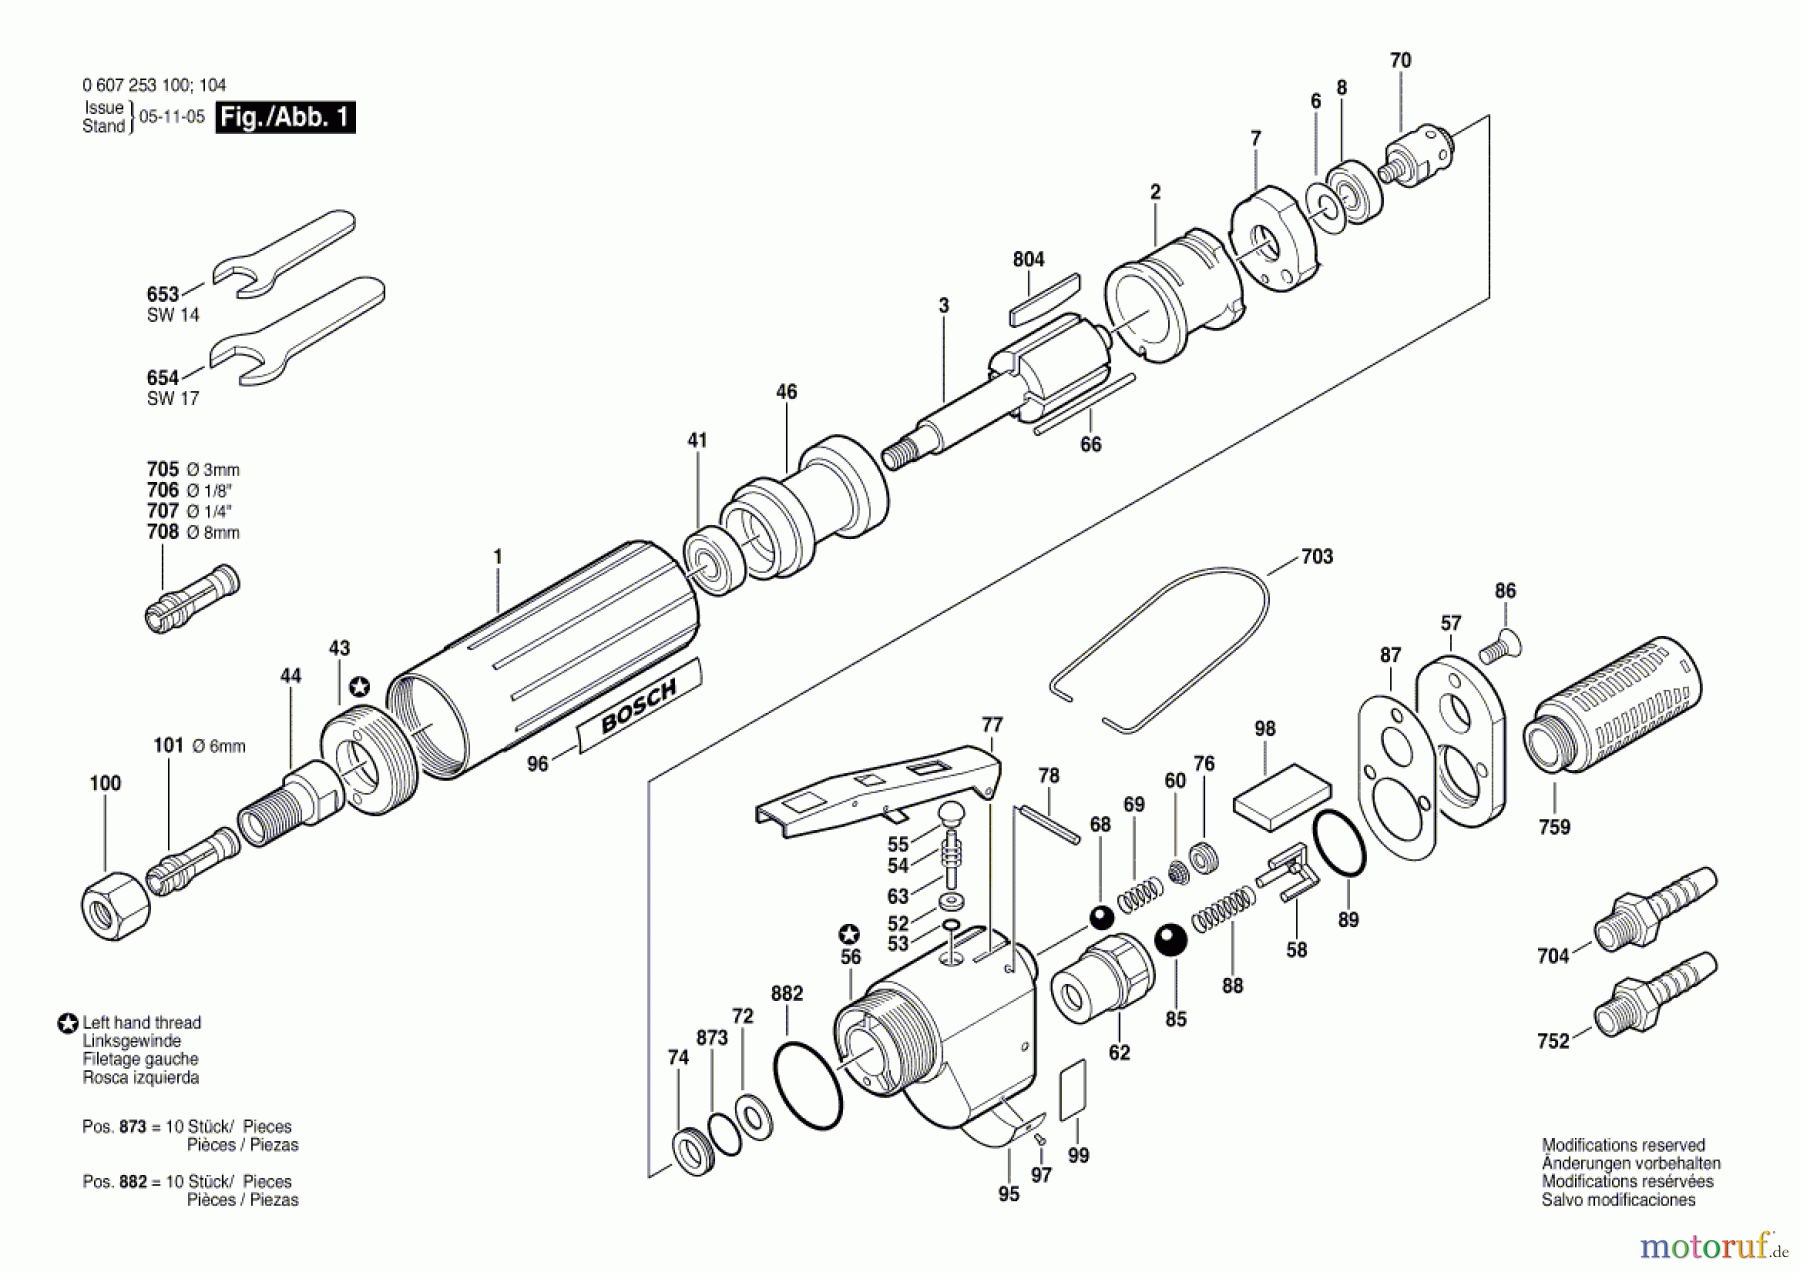  Bosch Werkzeug Pw-Geradschleifer 180 WATT-SERIE Seite 1